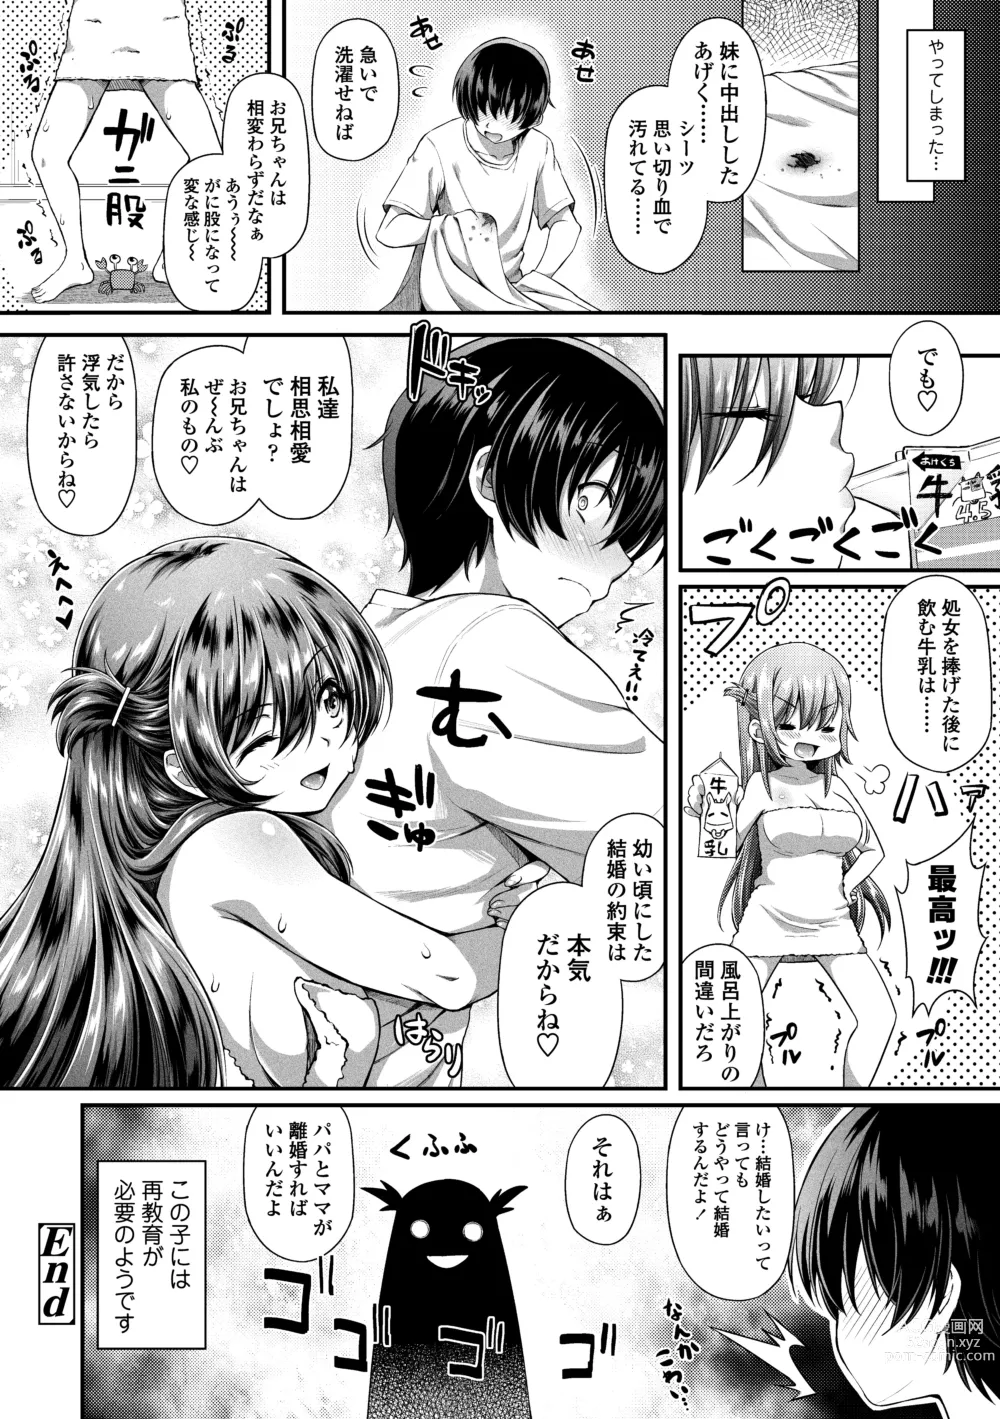 Page 224 of manga Hen na Ko demo Ii desu ka?